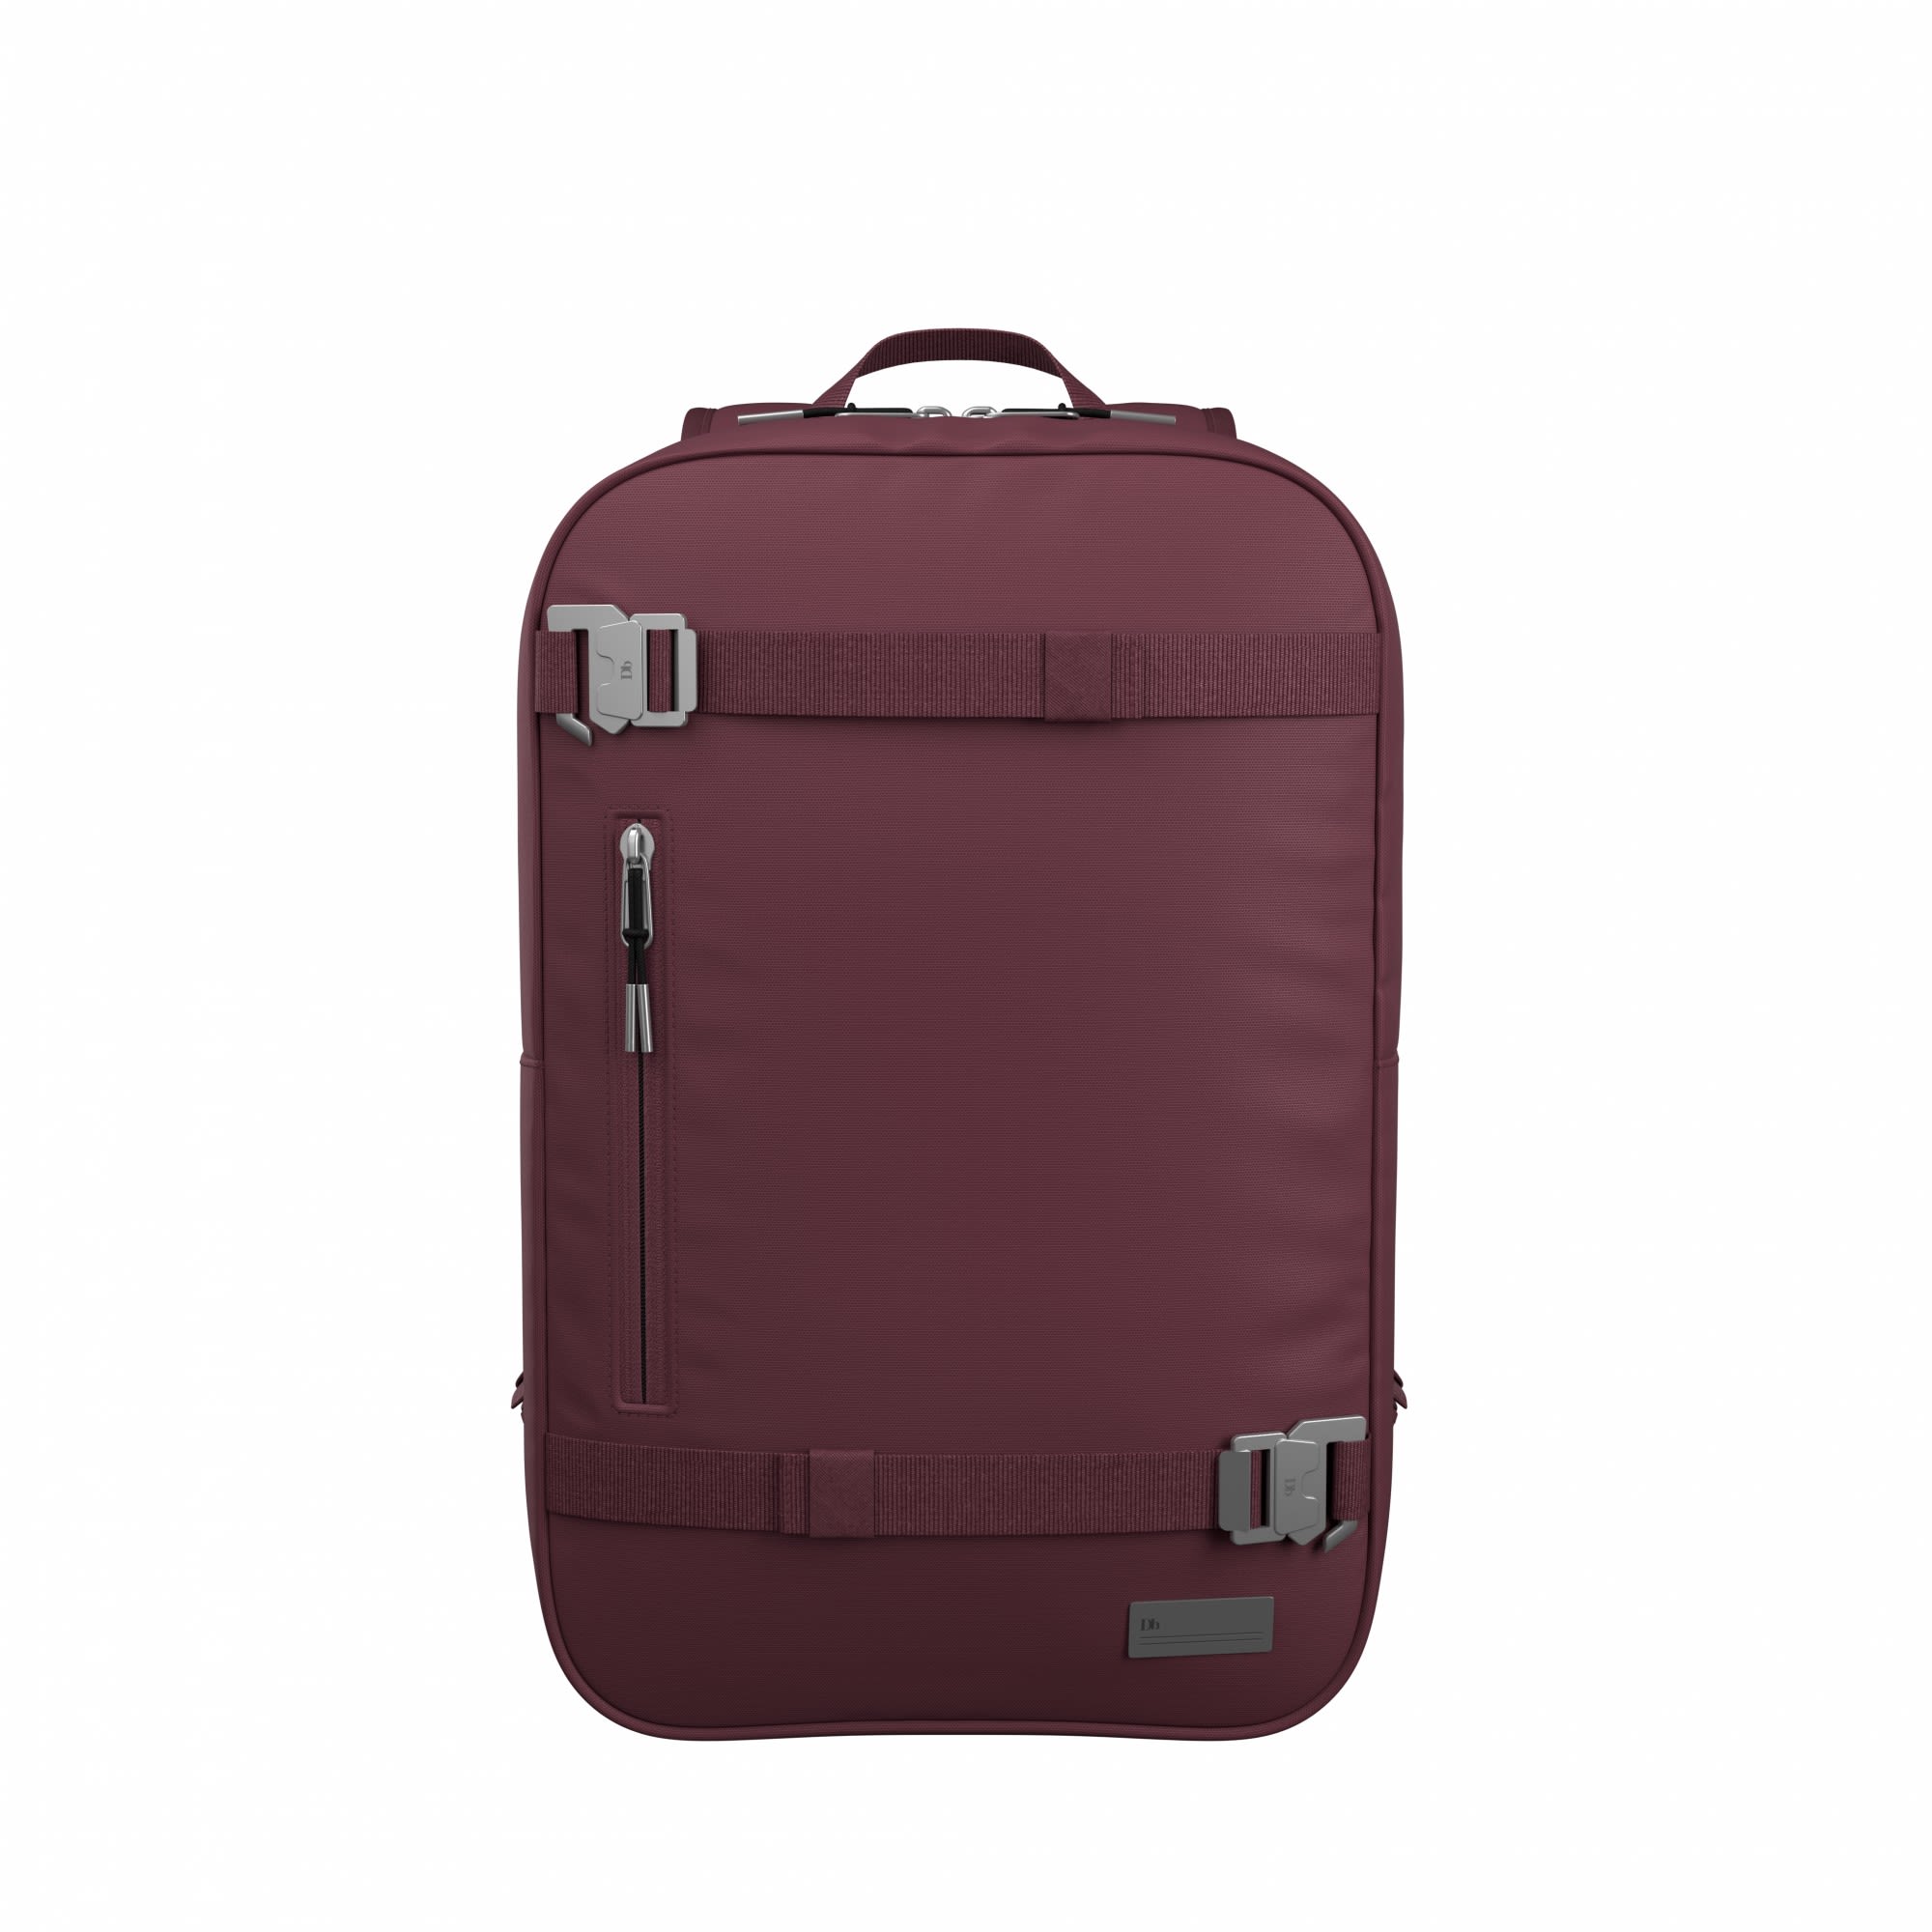 Db THE Vrldsvan 17L Backpack Lila- Daypacks- Grsse 17l - Farbe Raspberry unter Db